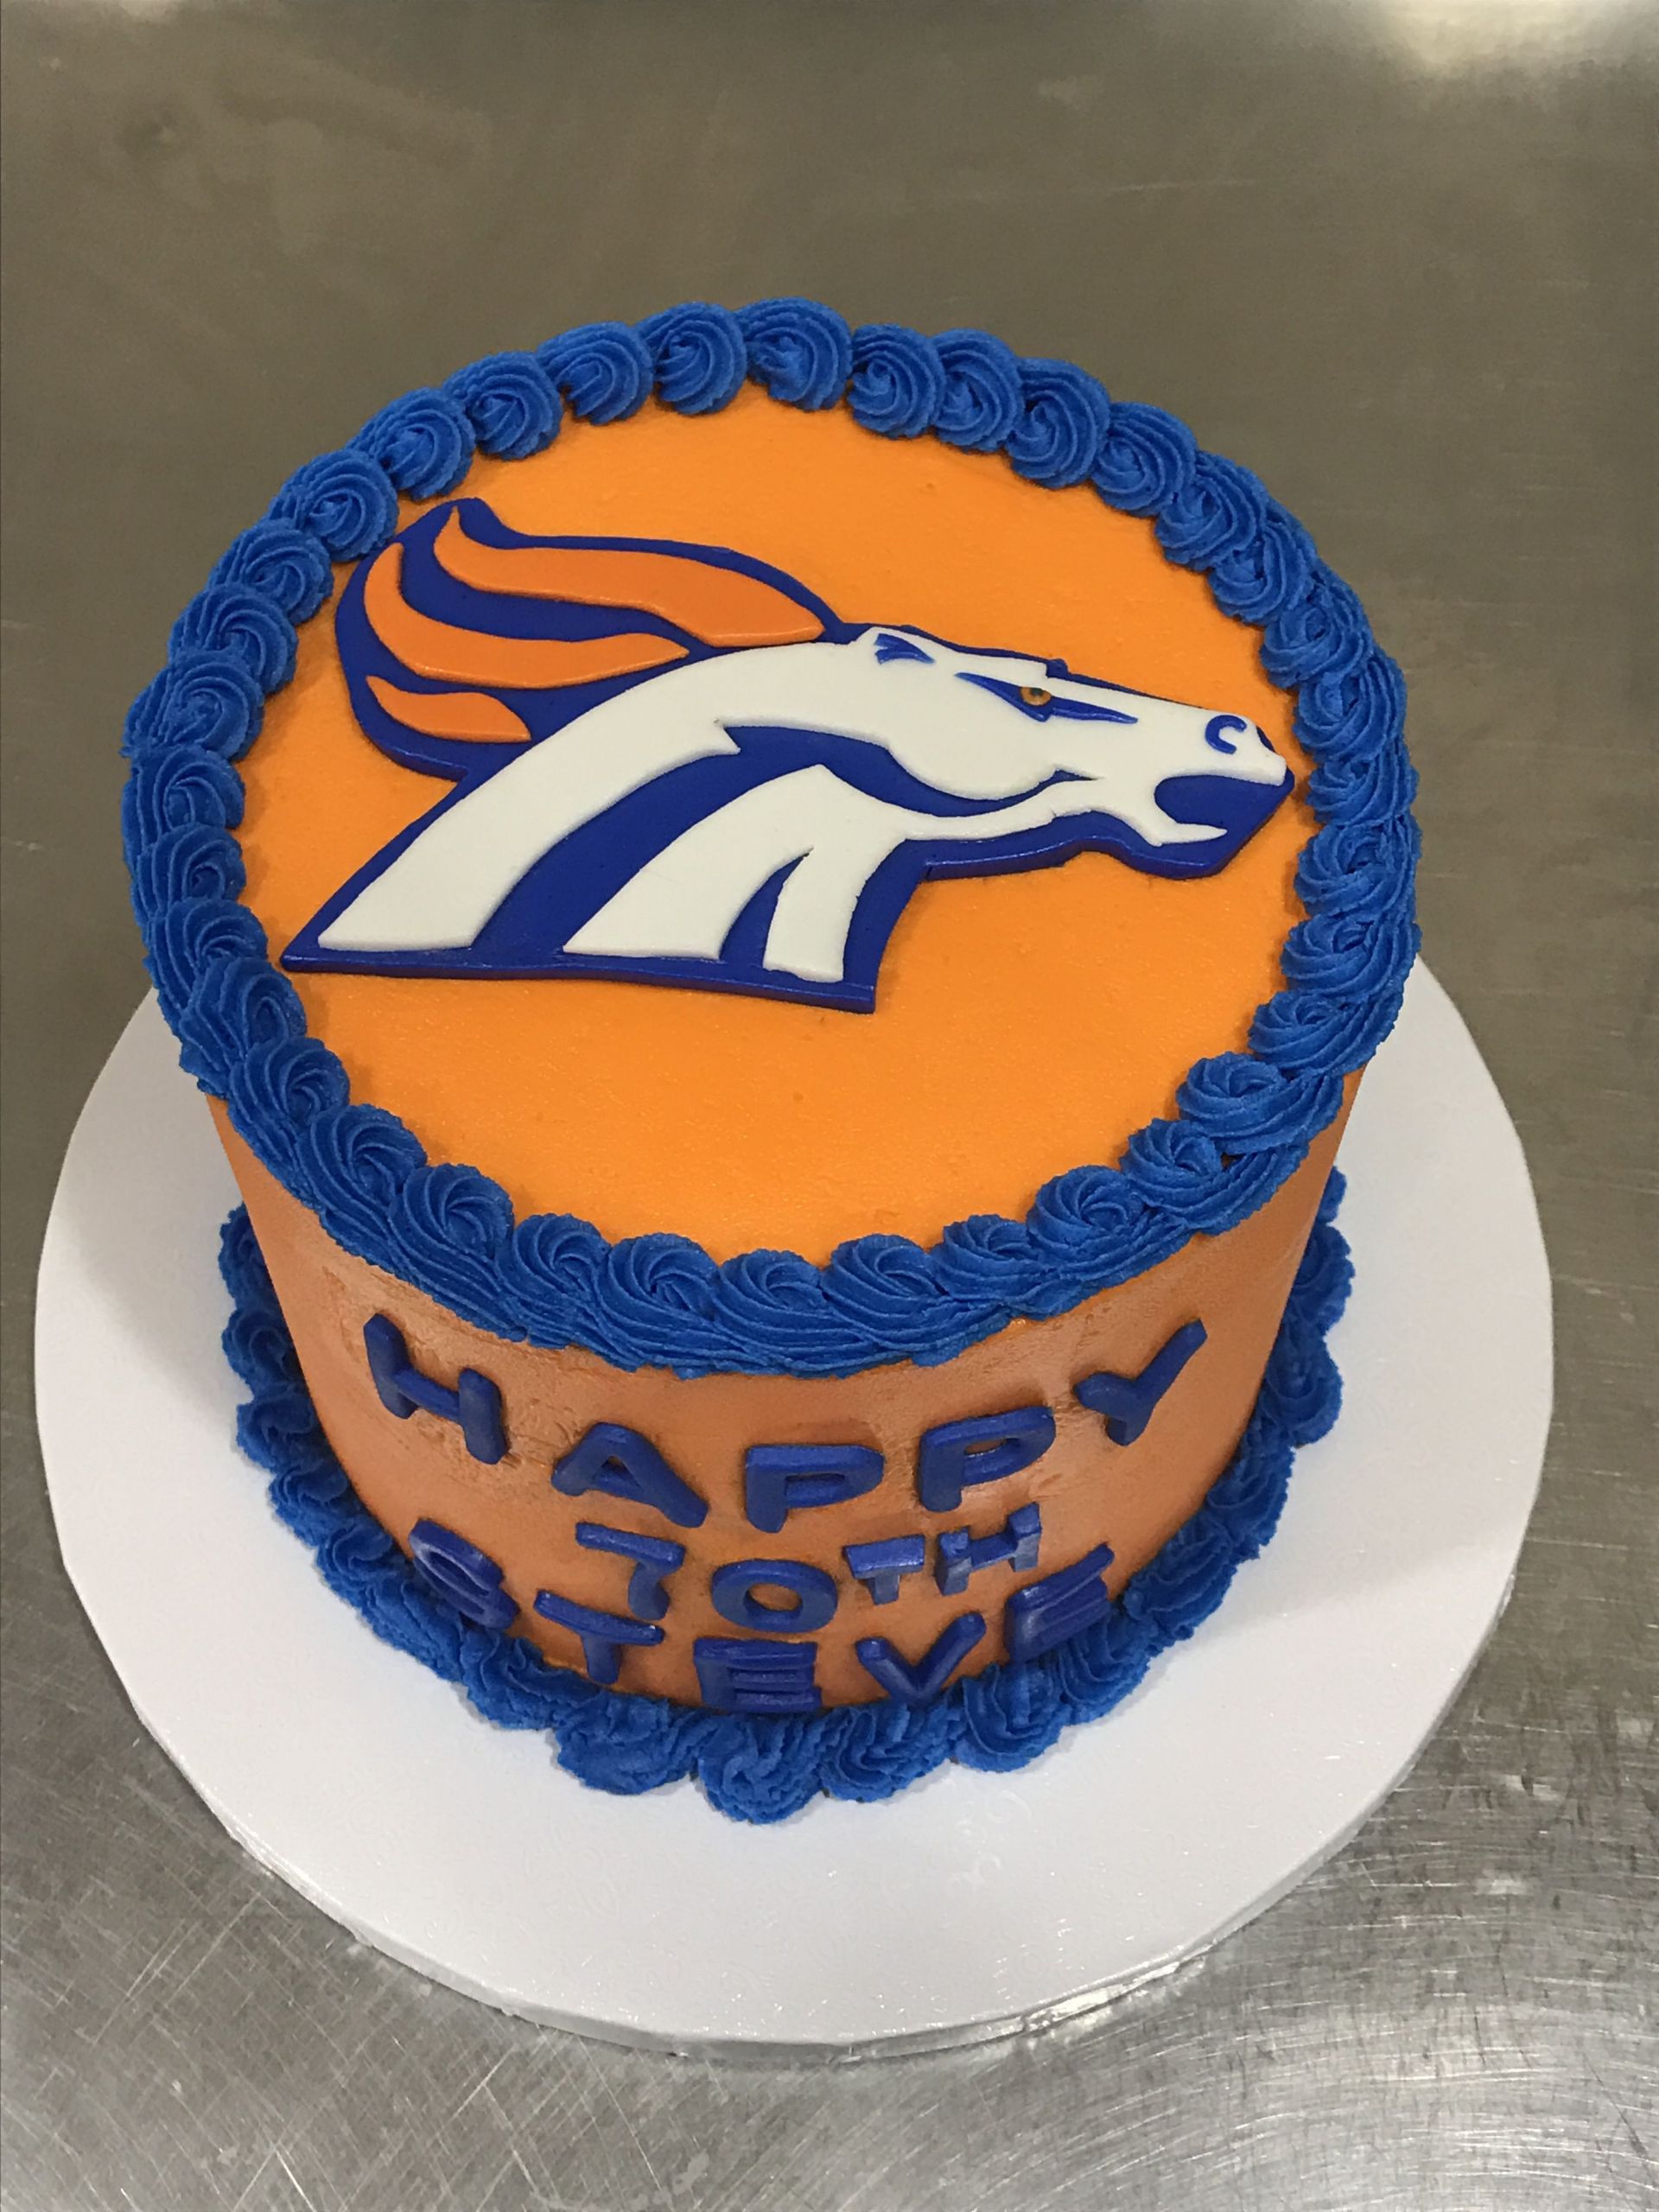 Denver Broncos Birthday Cake
 Denver Broncos cake denverbroncoscale